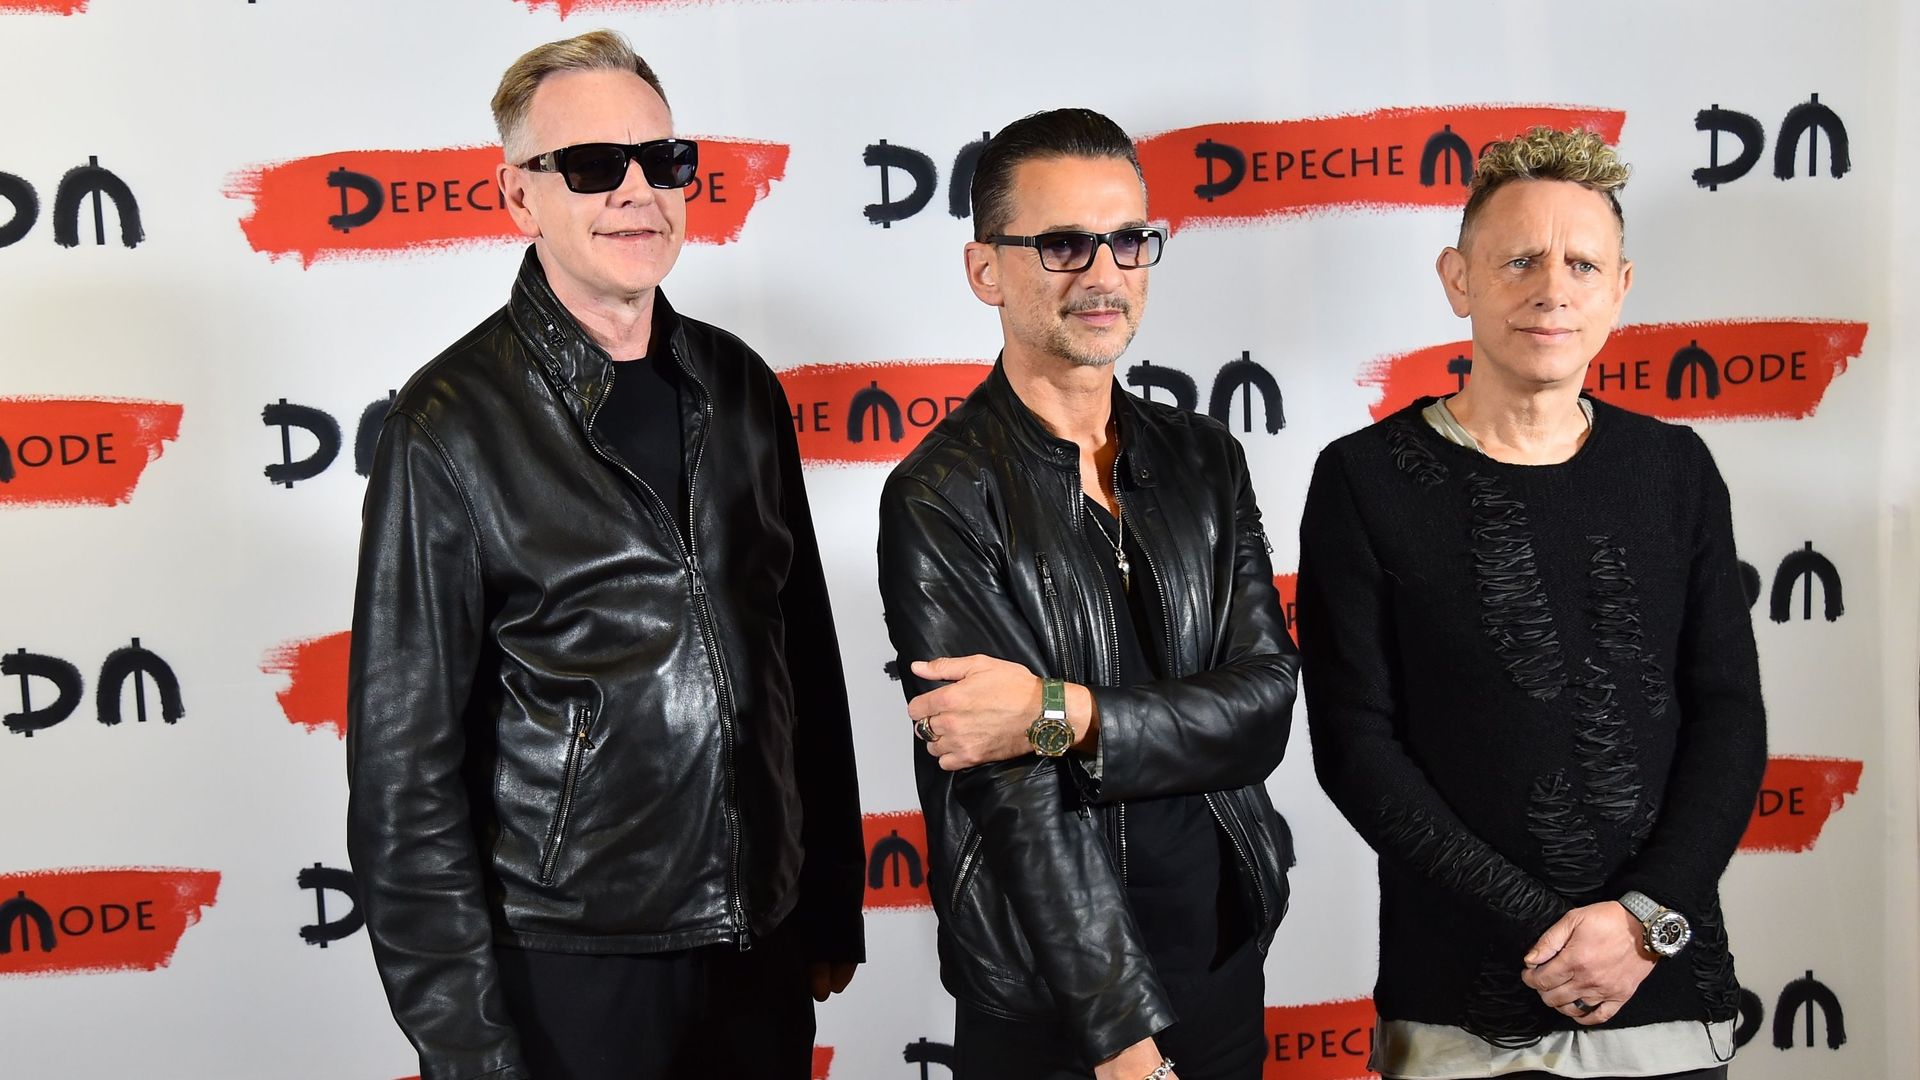 Les membres du groupe Depeche Mode